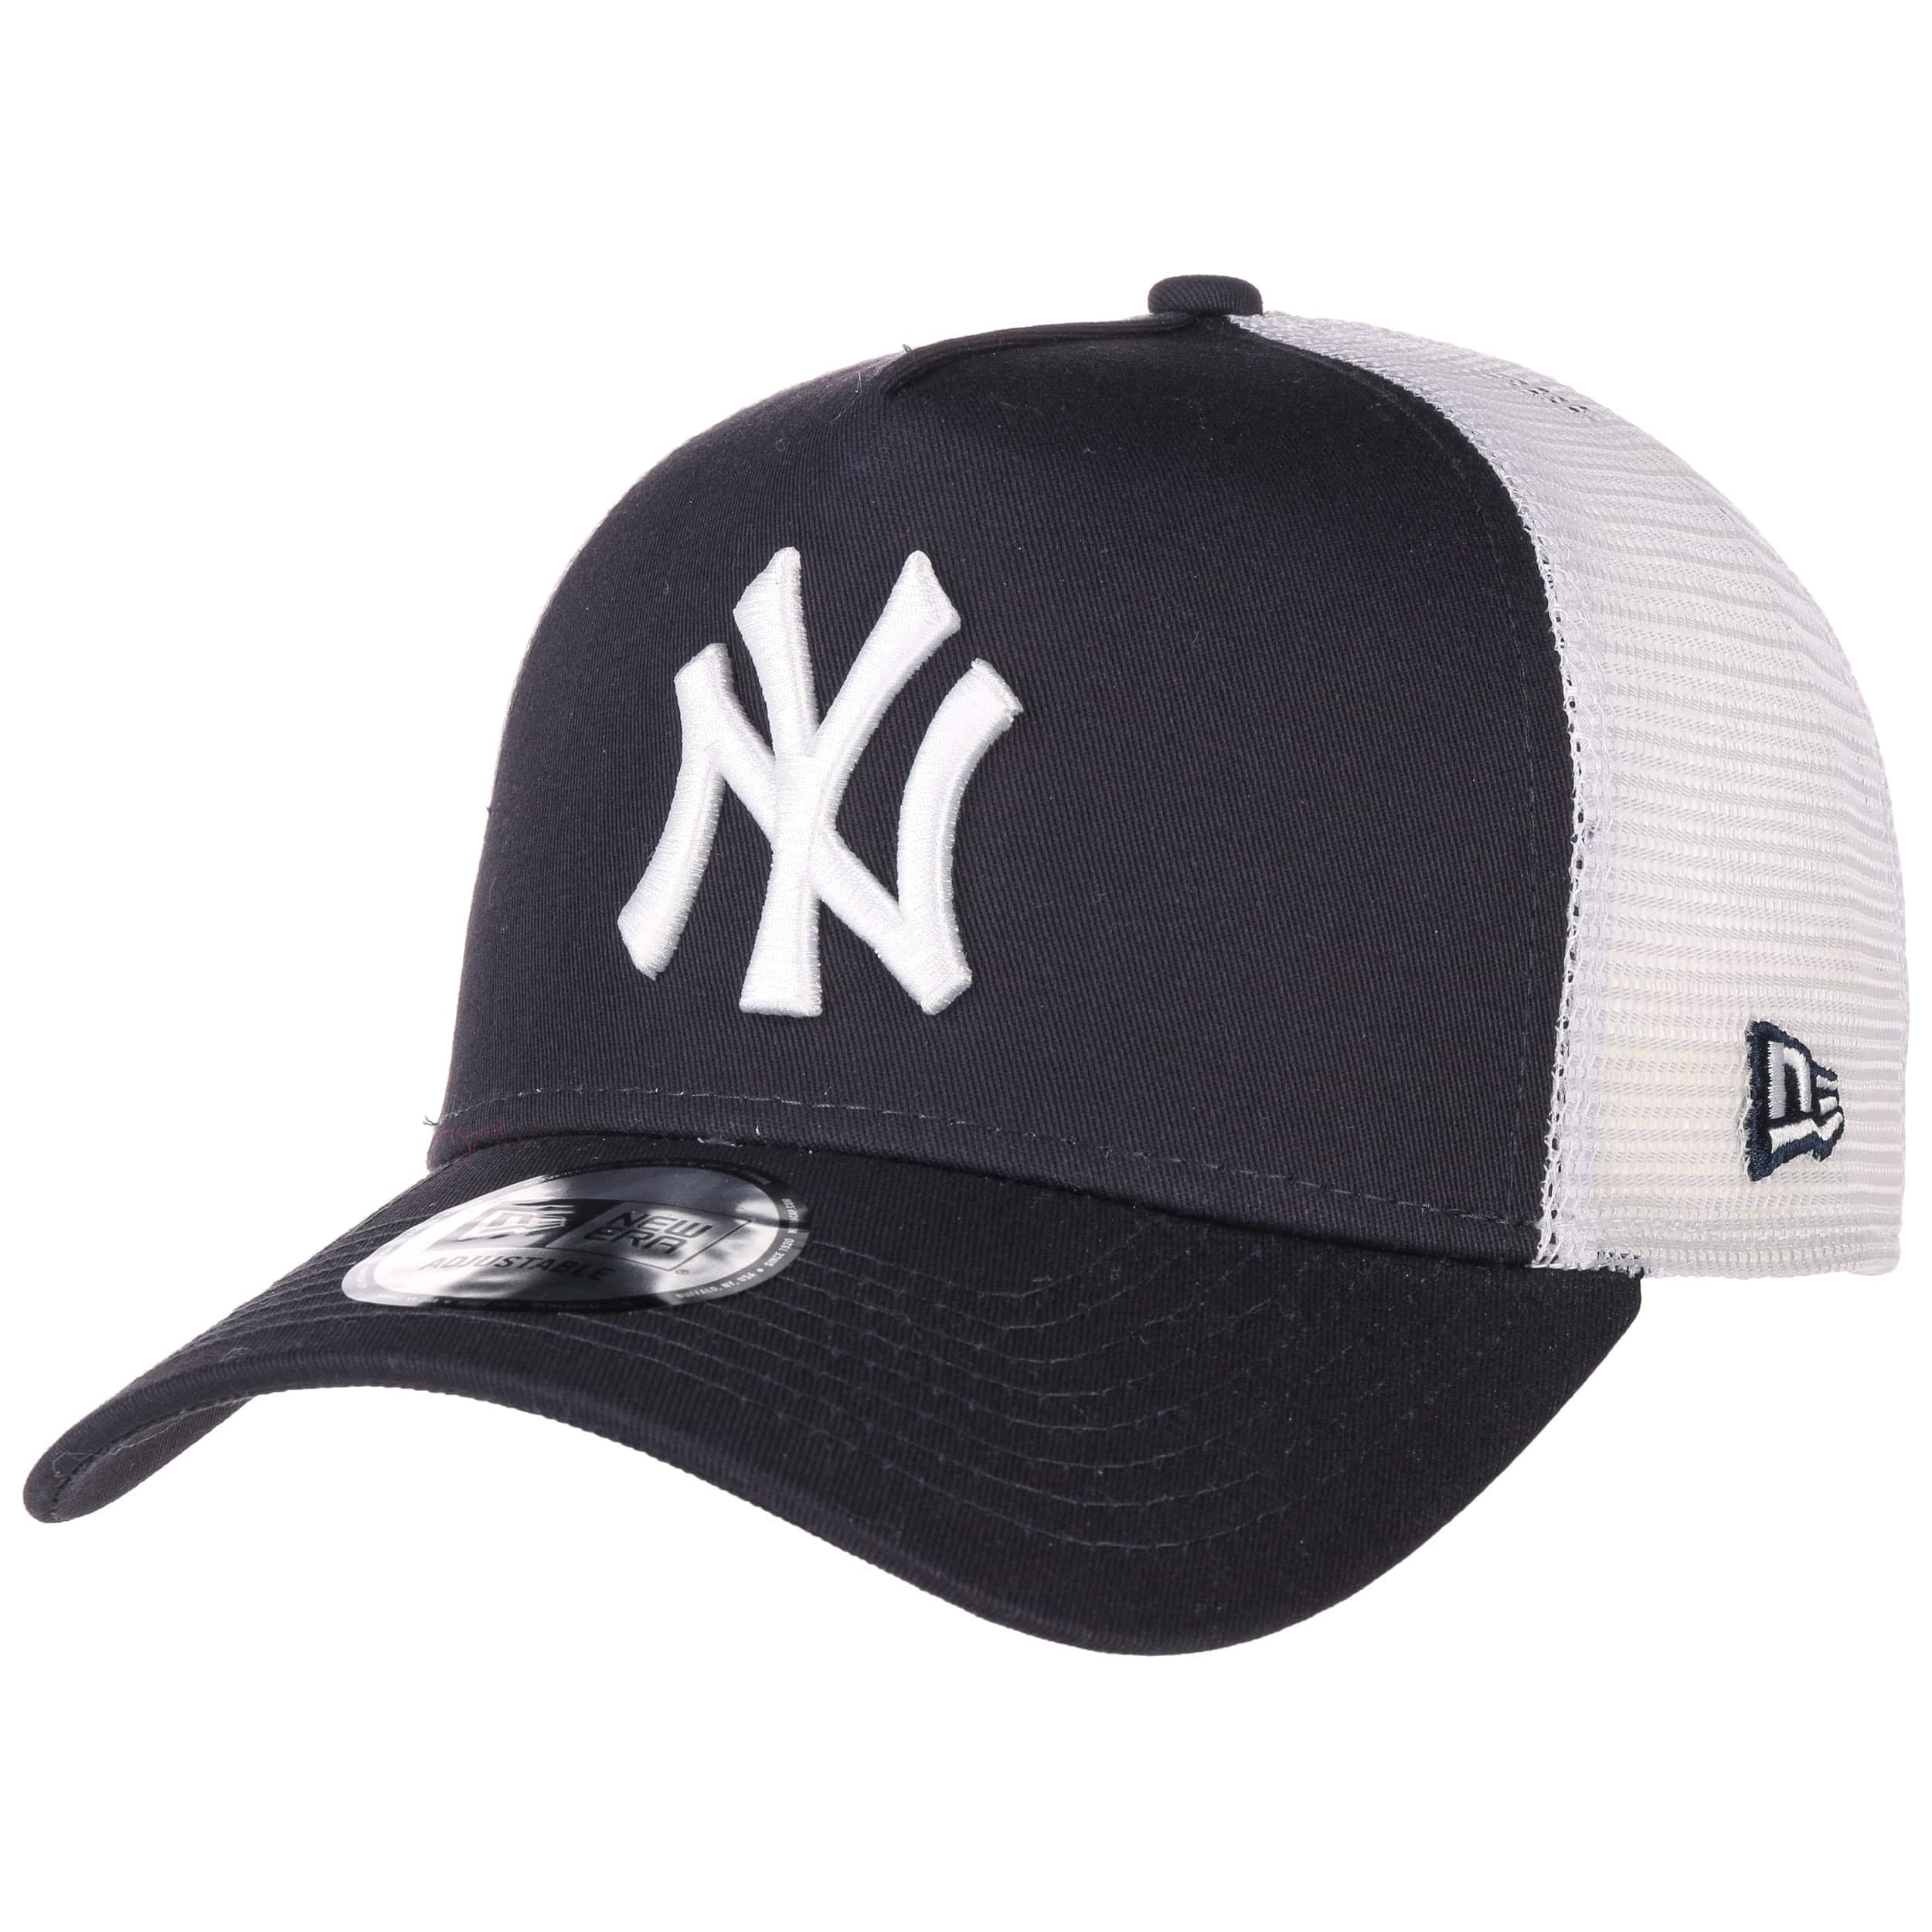 NY Yankees New Era Navy Clean Trucker Cap